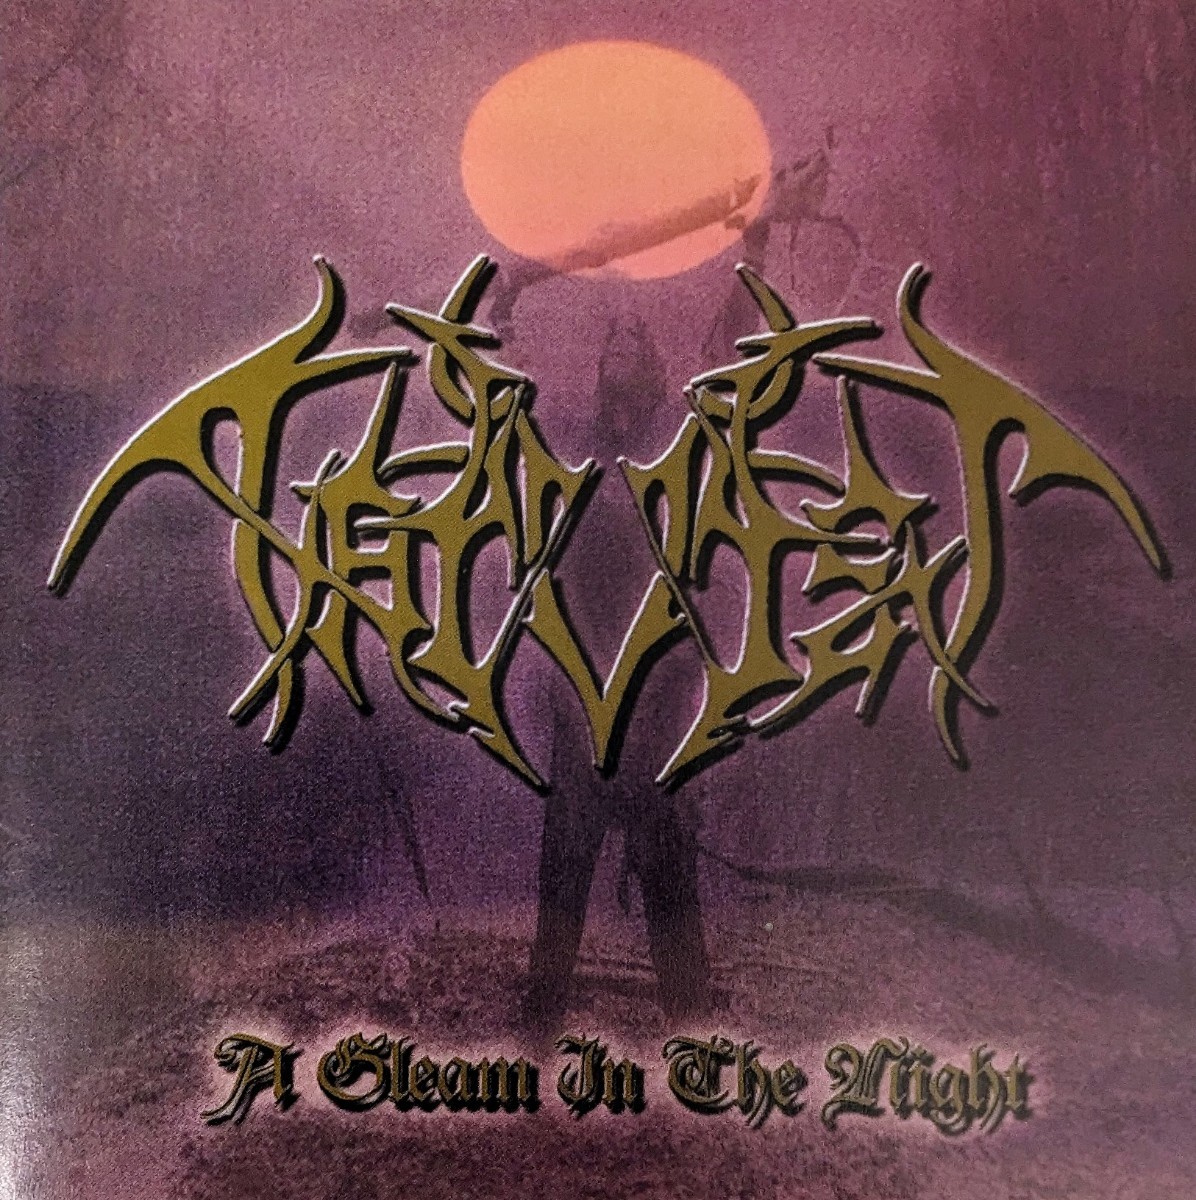 Harvist US ペイガン・ブラックメタル ヘヴィメタル Peigan Black Heavy Metal 輸入盤CD 1stの画像1